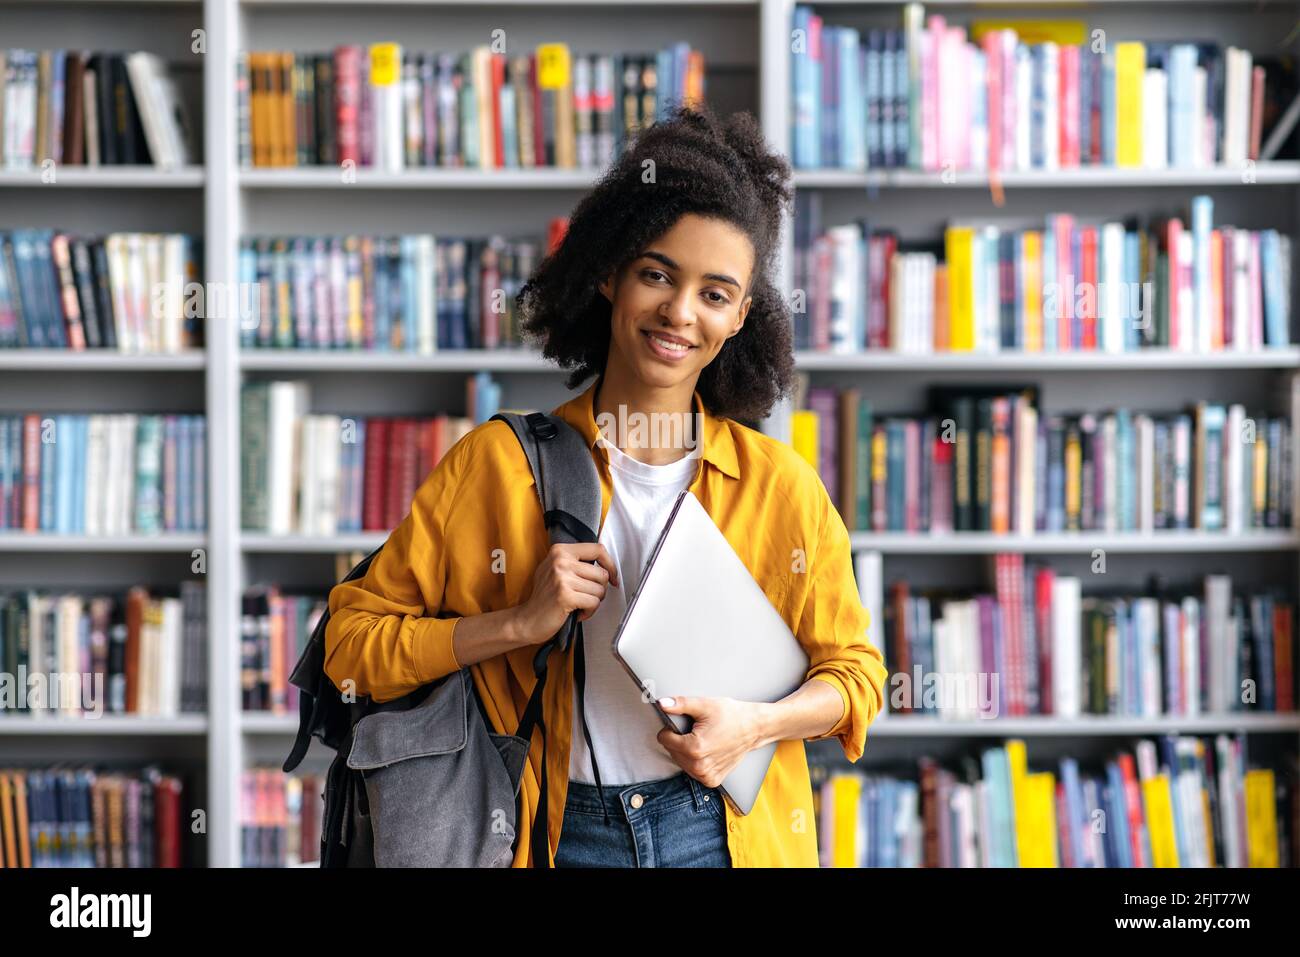 Portrait selbstbewusst glücklich Attraktive afroamerikanische Studentin im Teenageralter, die vor dem Hintergrund von Bücherregalen in der Universitätsbibliothek steht, Laptop und Rucksack in der Hand hält, auf die Kamera schaut und freundlich lächelt Stockfoto